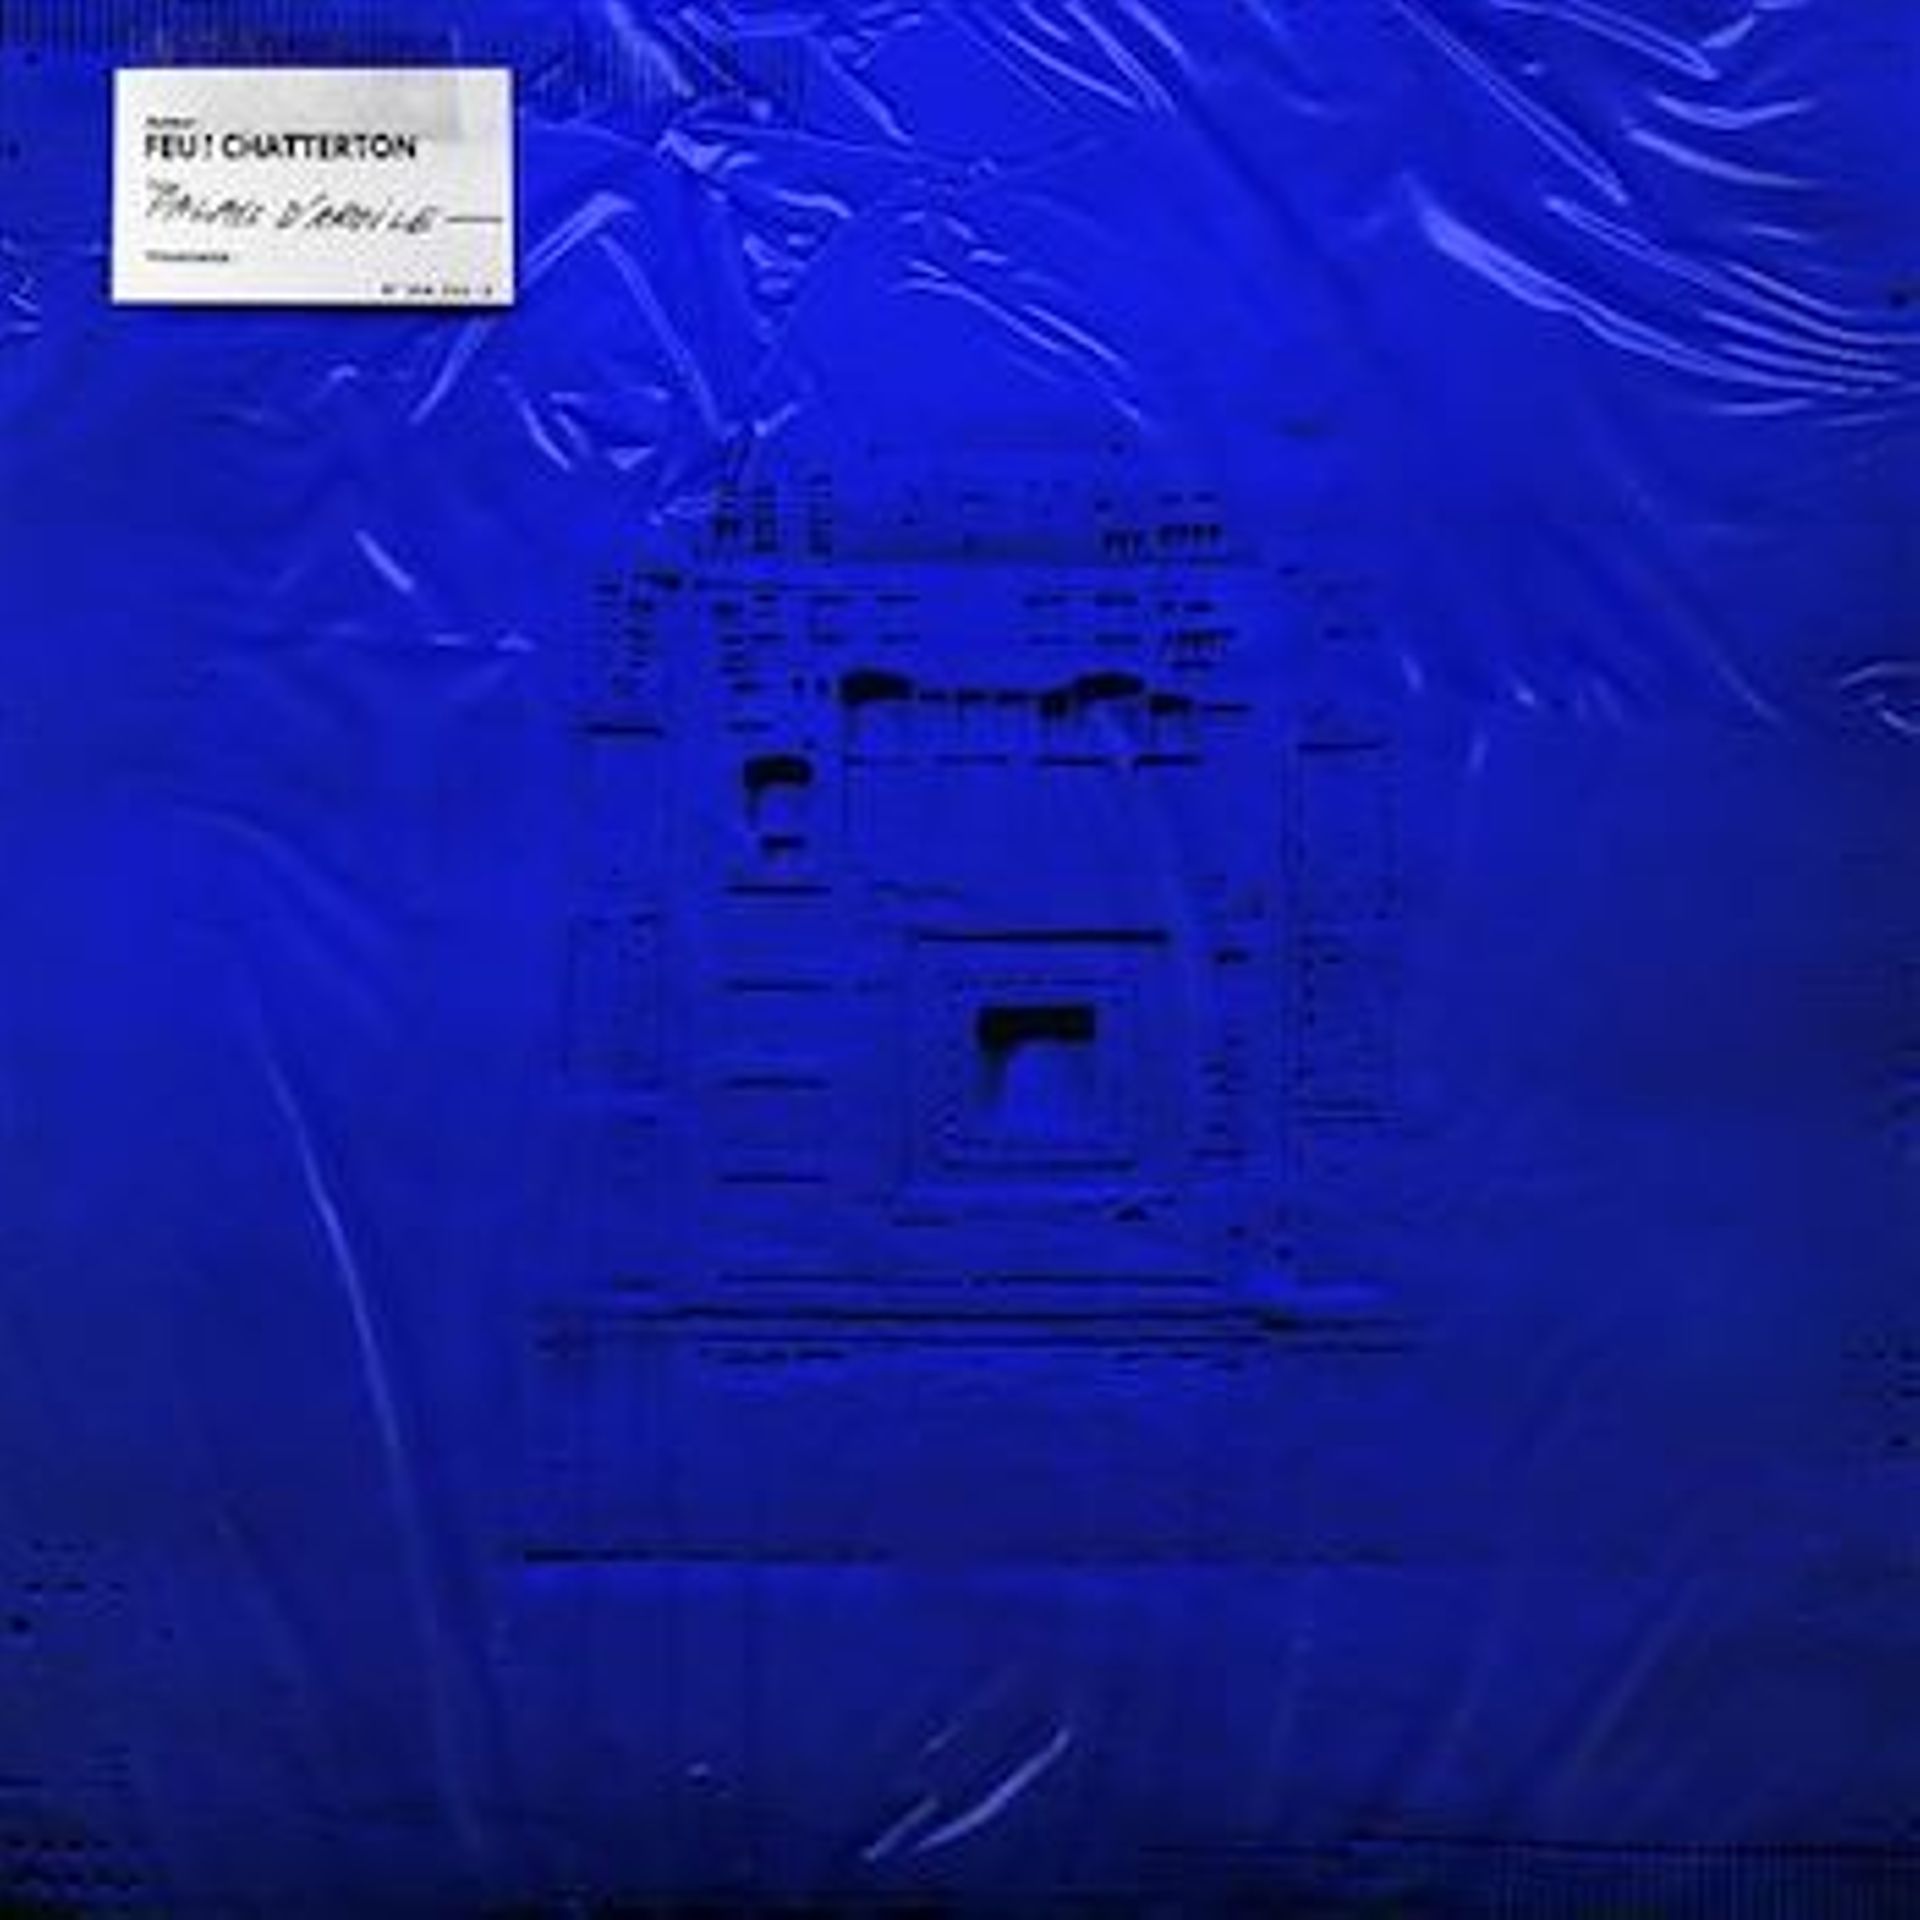 Cover de l'album "Palais d'argile" de Feu! Chatterton